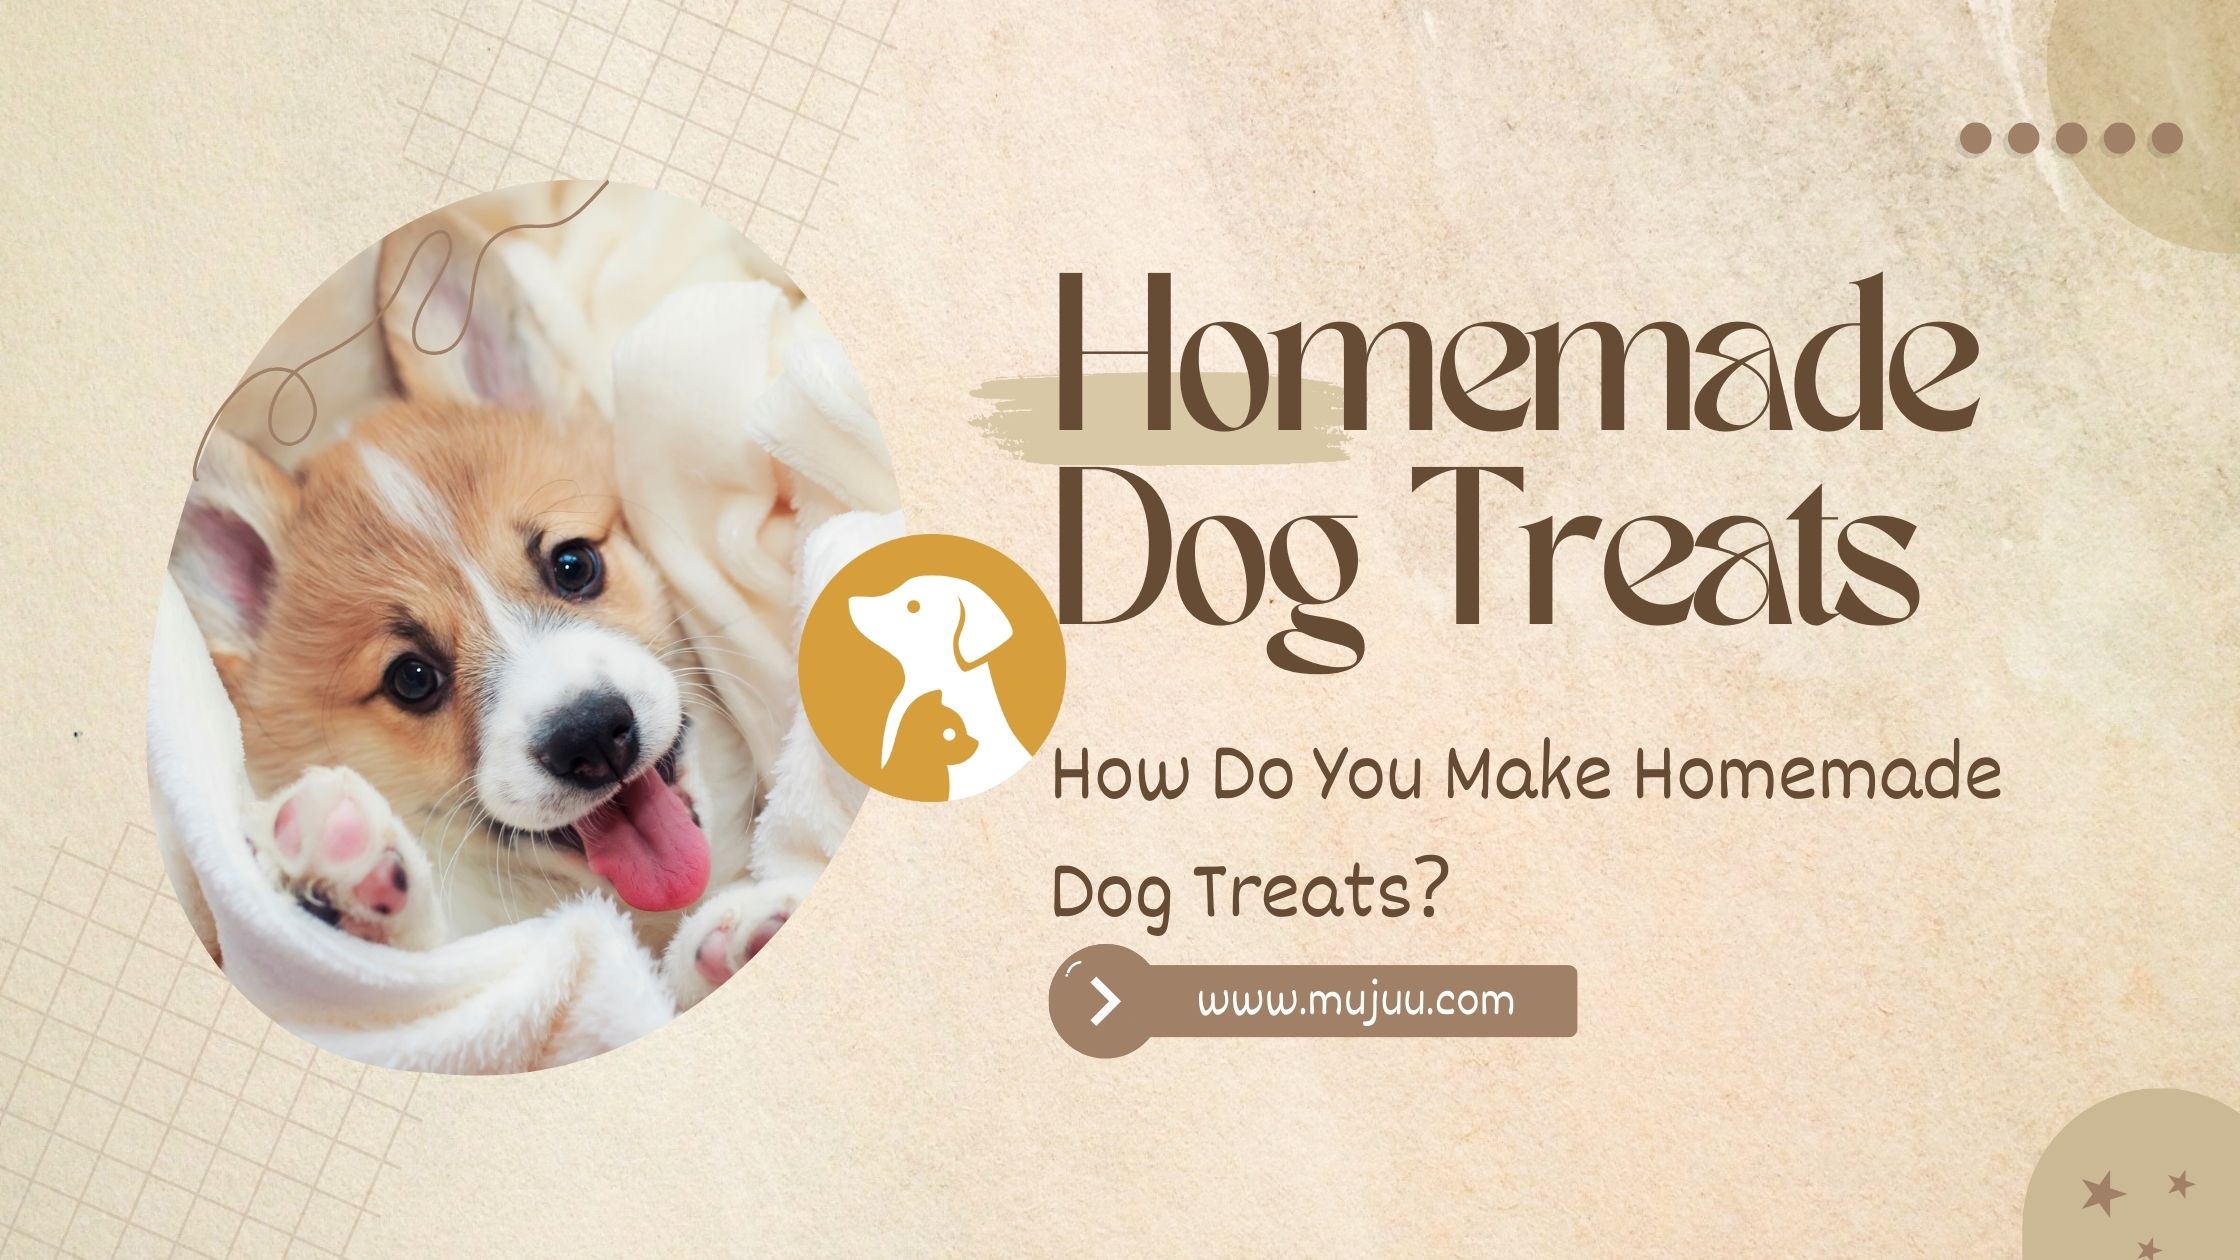 How Do You Make Homemade Dog Treats?